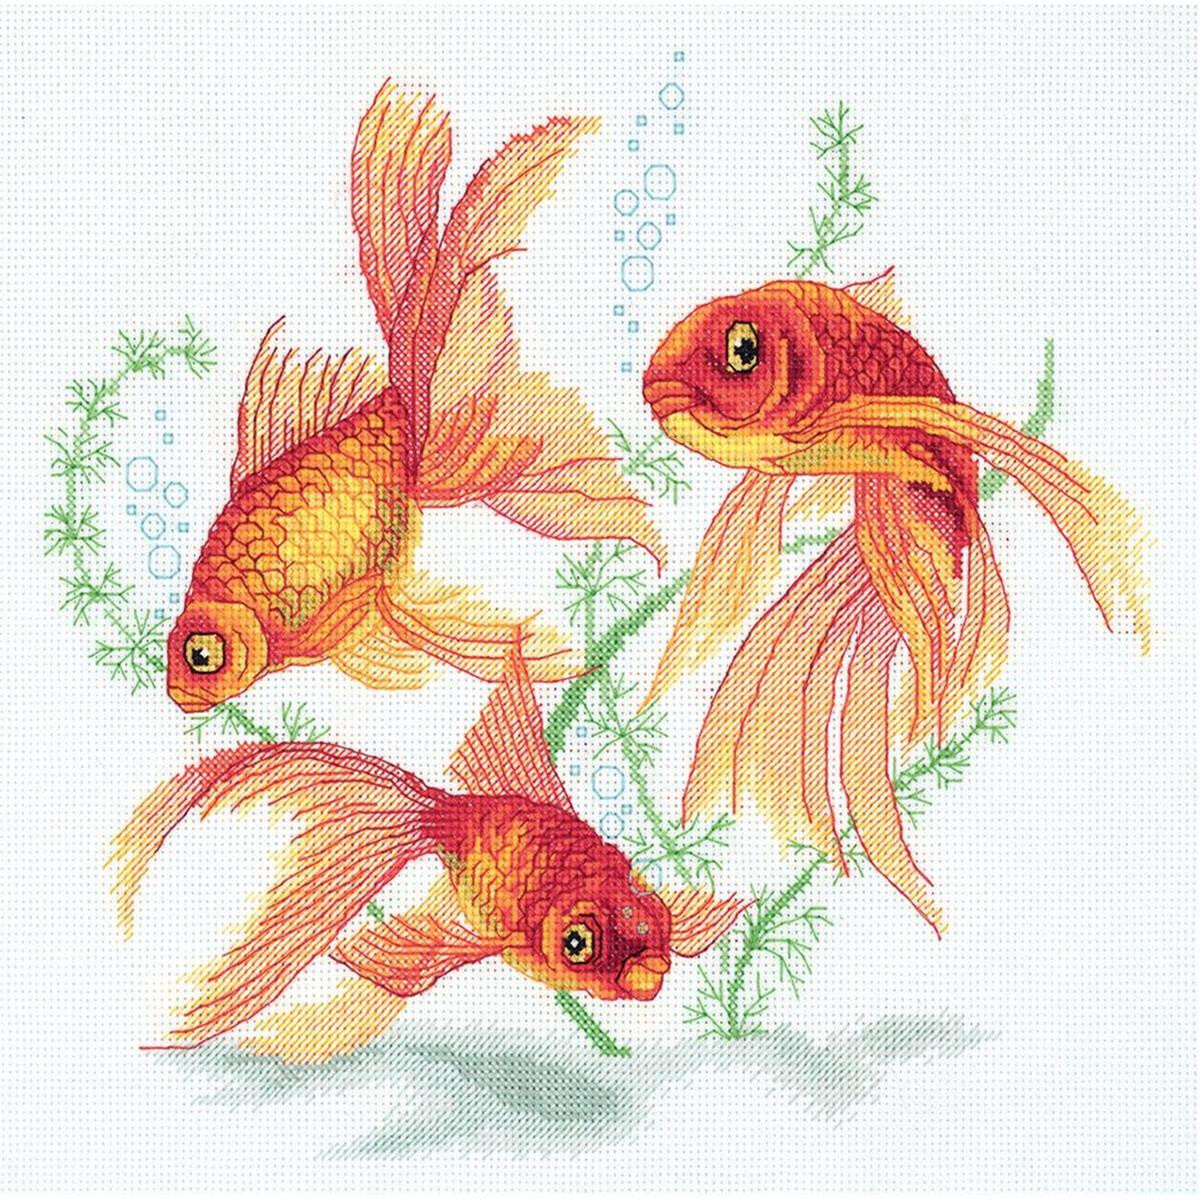 Panna counted cross stitch kit "Goldfish"...